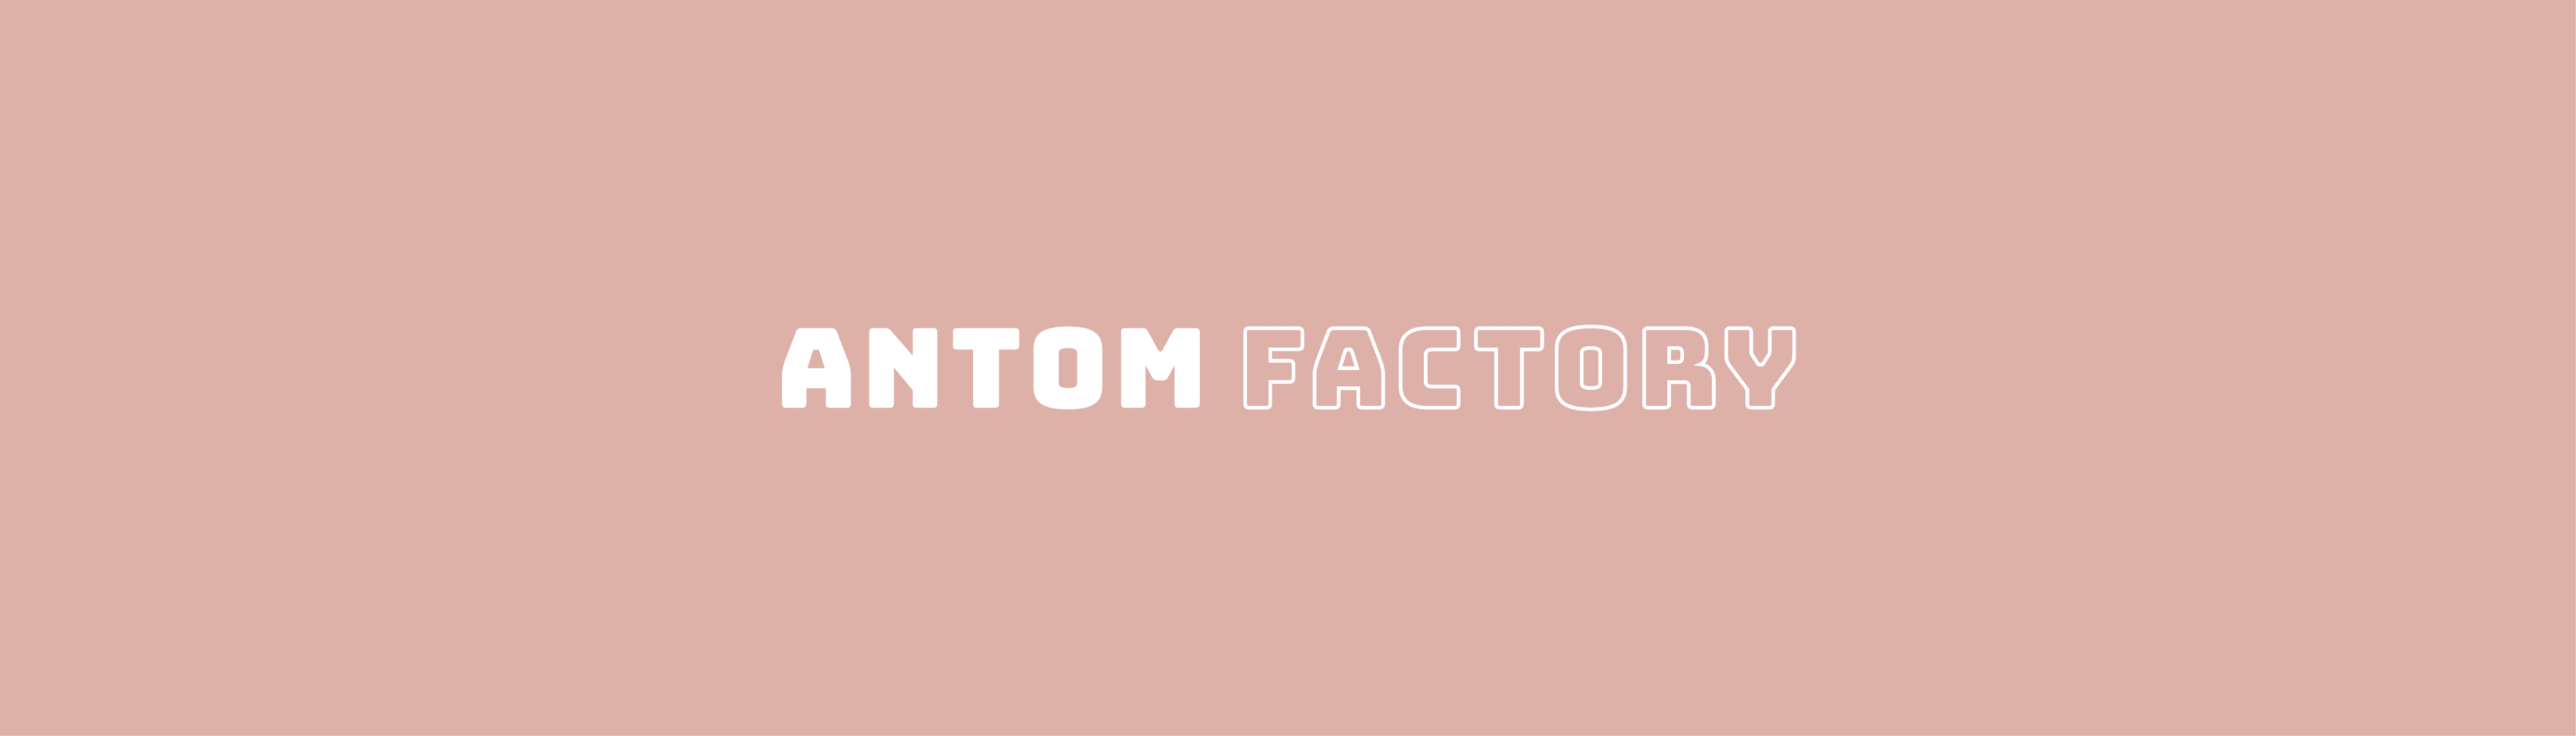 Antom_Factory Banner